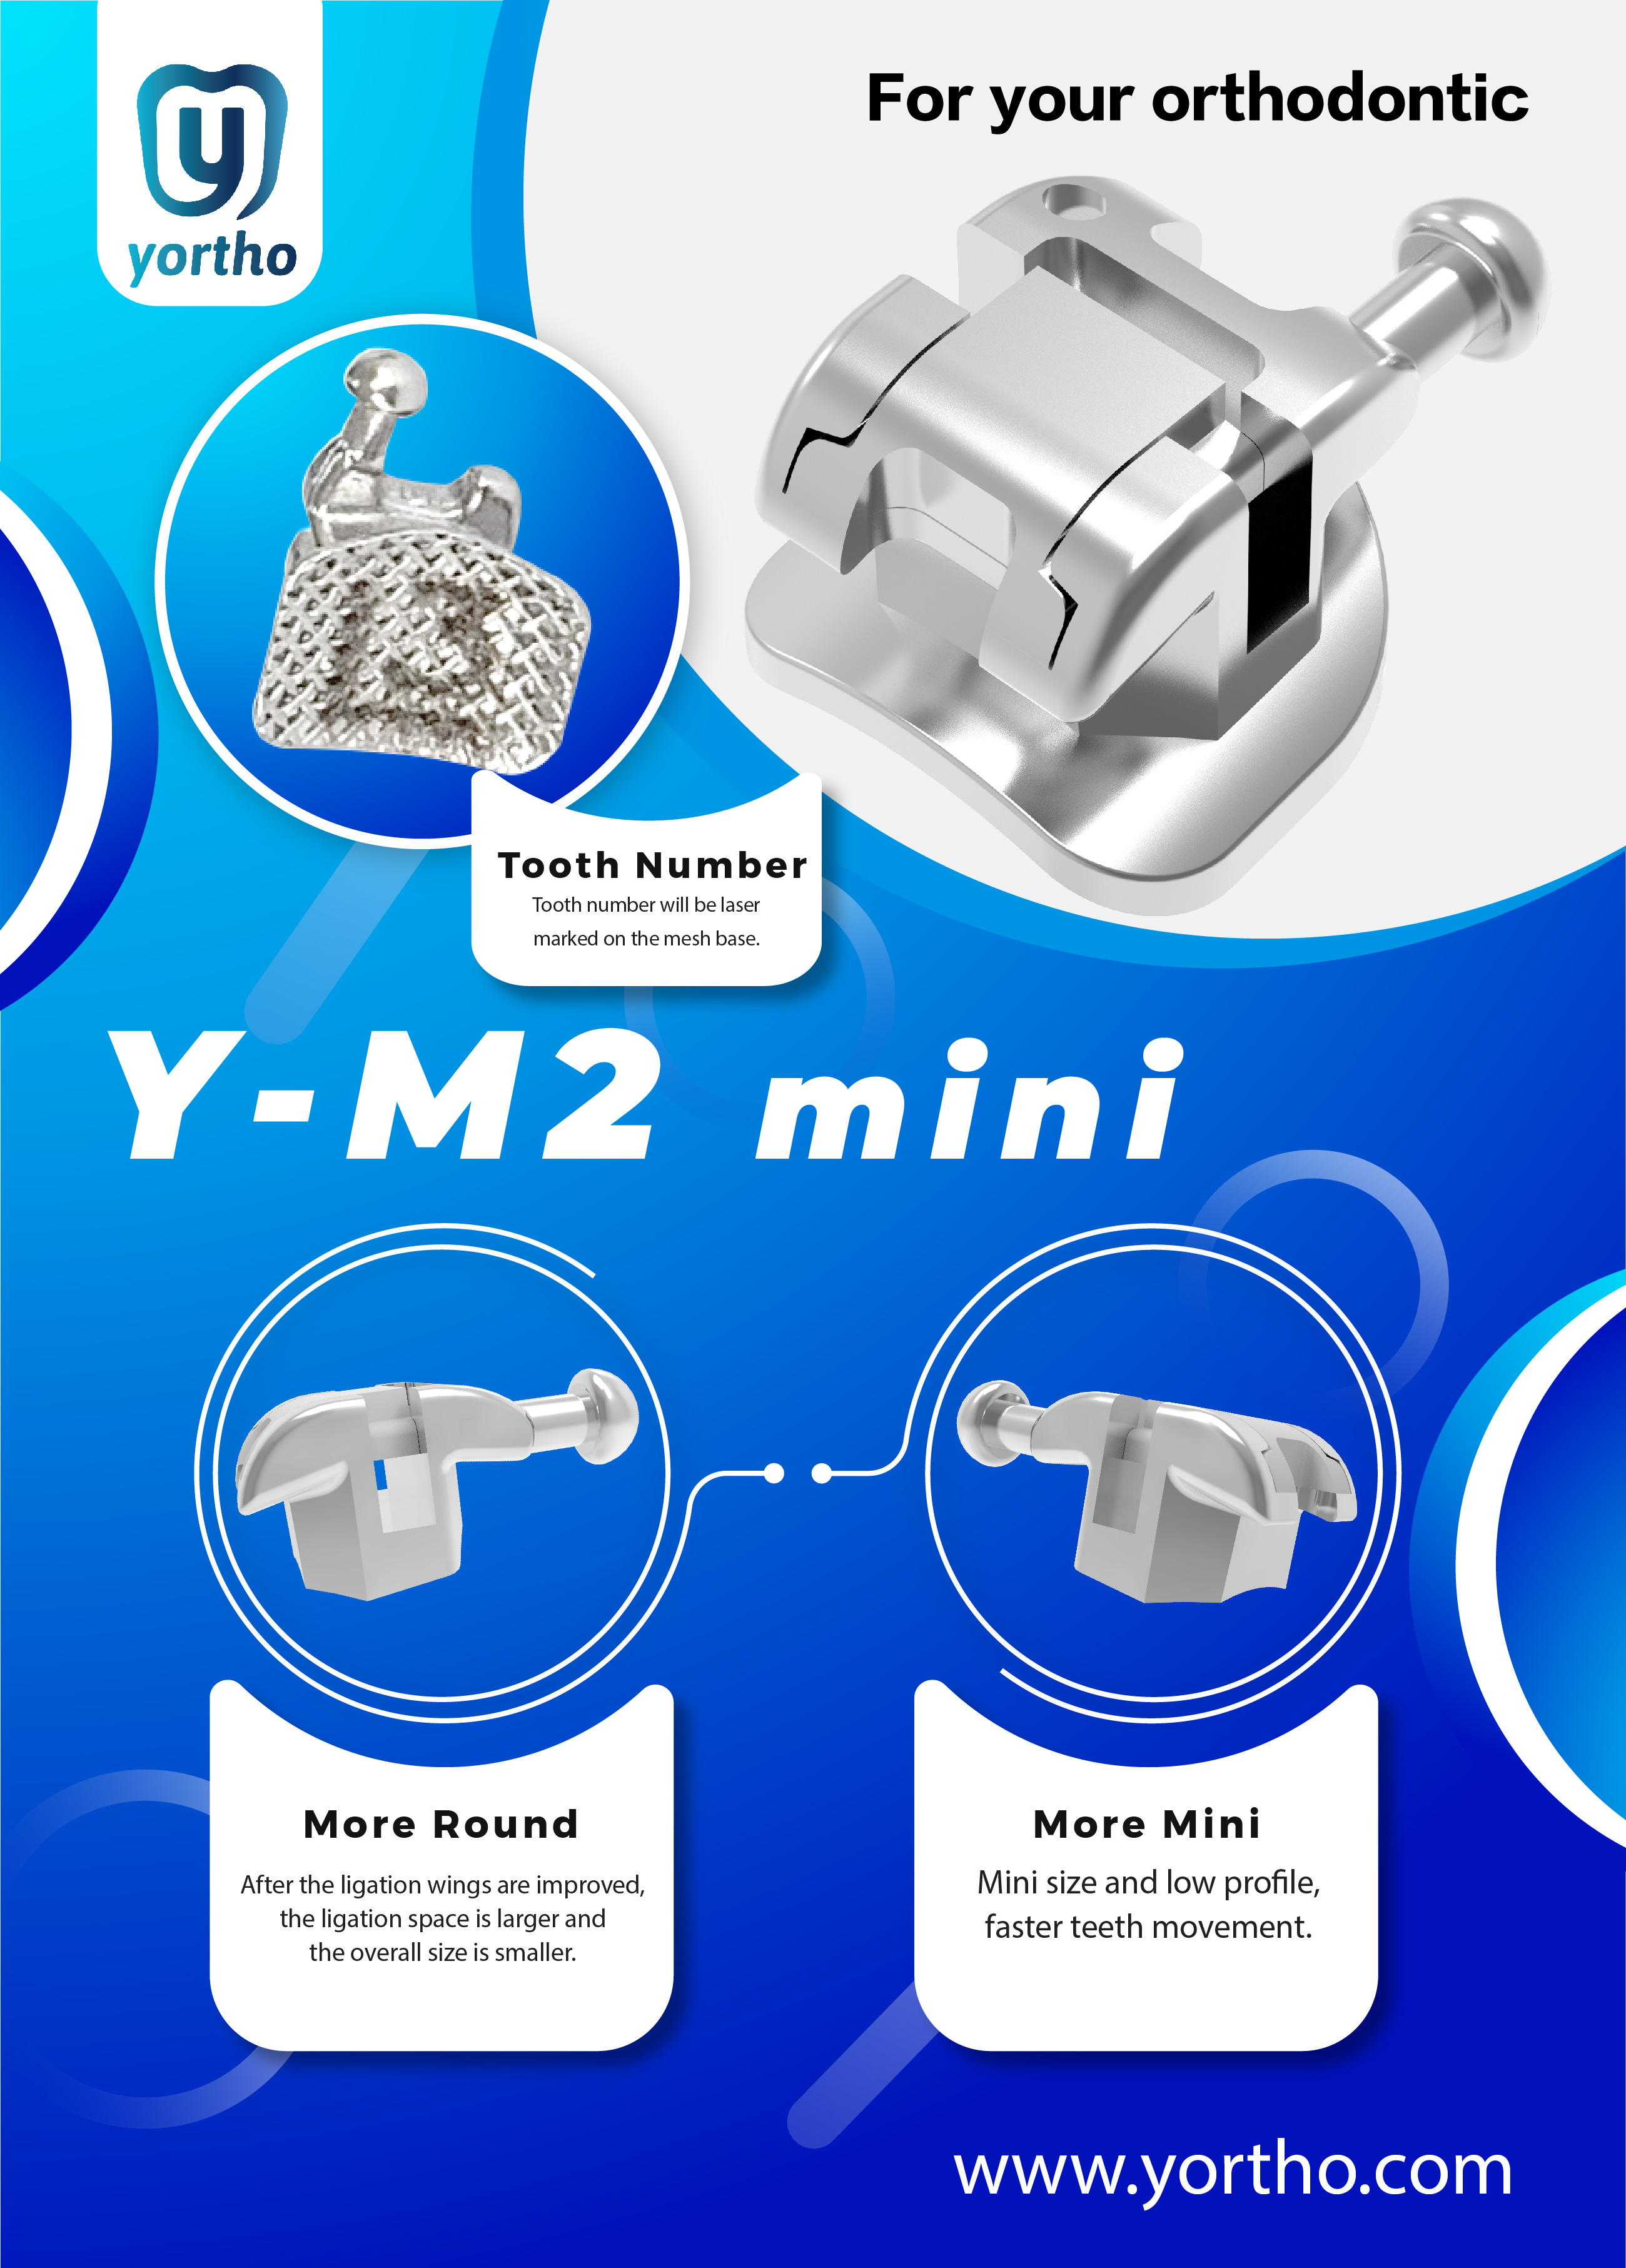 Y-M2 mini